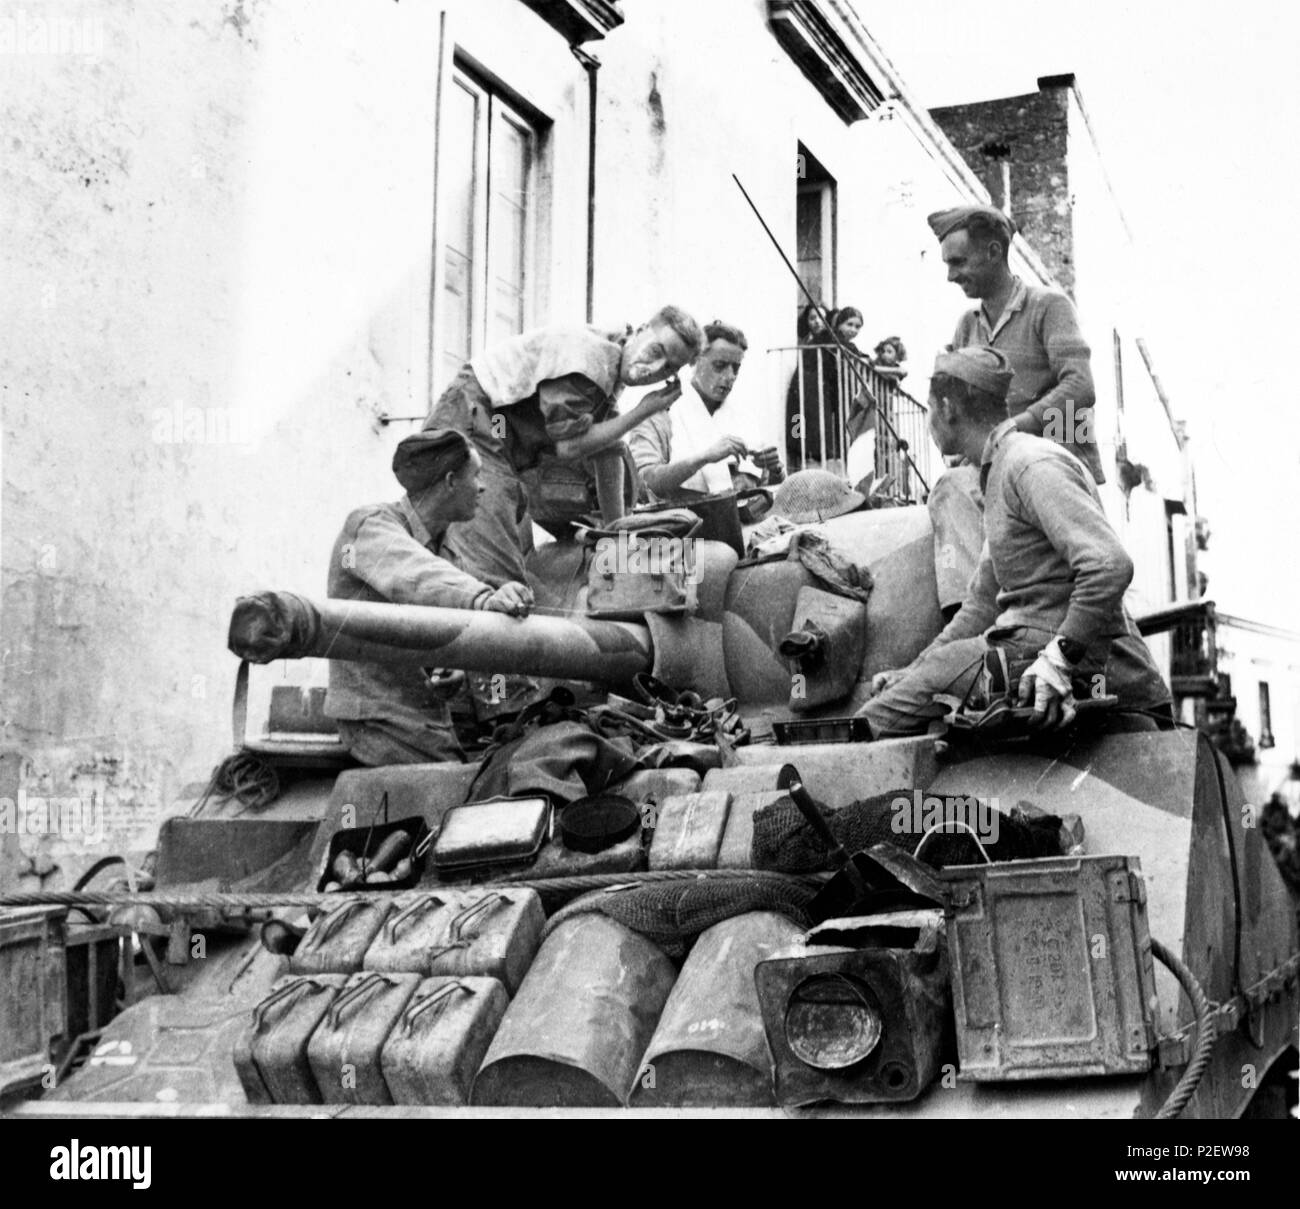 Invasion de l'Italie - 5e armée britannique avance au nord de Naples. Photo montre : les citoyens de la ville de San Martín de sortir sur leur balcon pour regarder un homme de chars britannique ayant un rasage rapide sur le dessus de son réservoir dans la rue. Banque D'Images